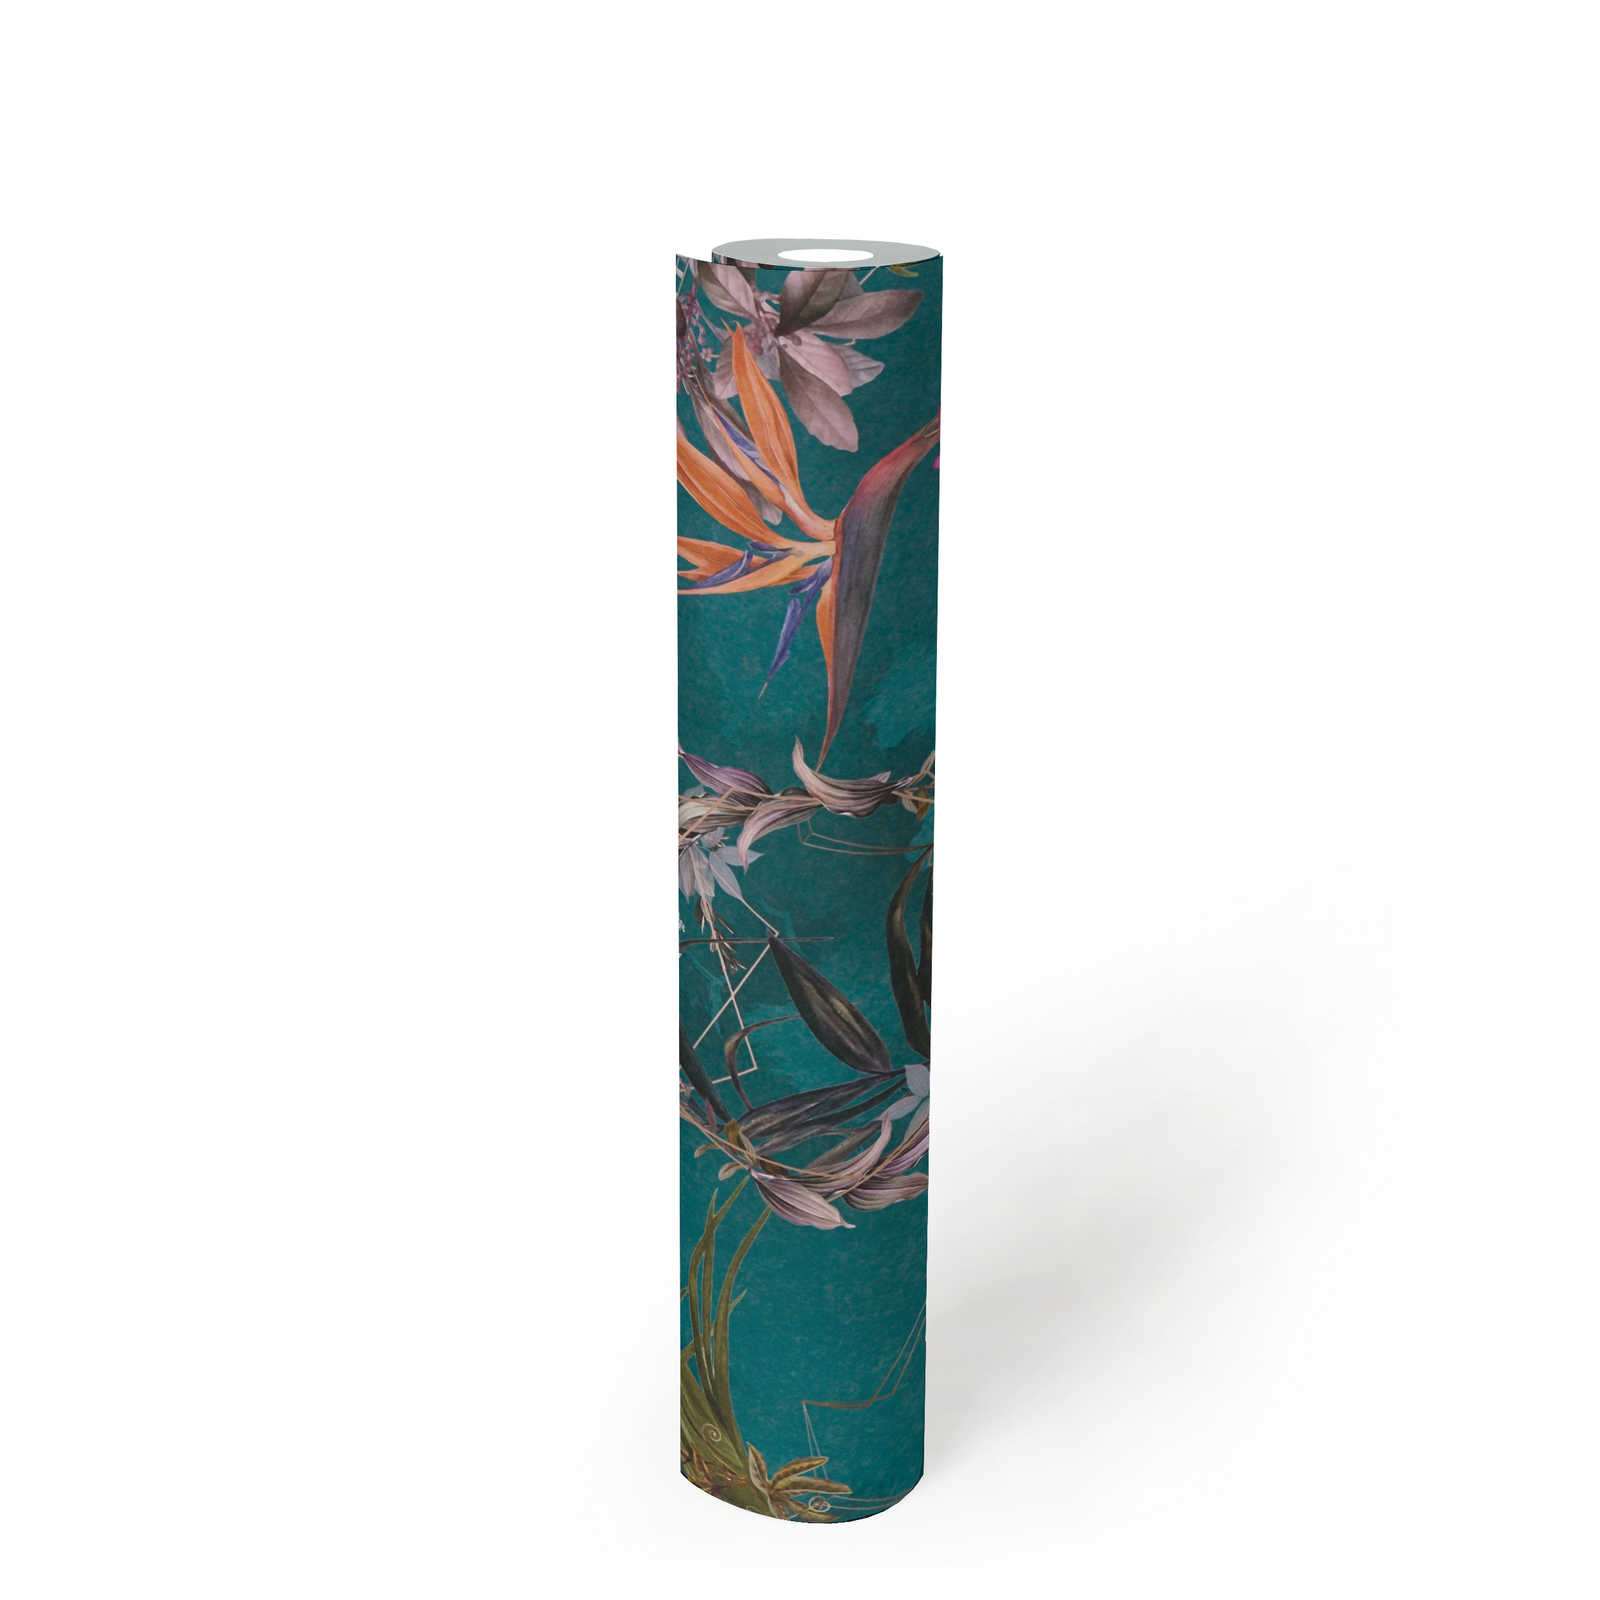             Papier peint jungle fleurs tropicales & oiseaux - turquoise, vert, multicolore
        